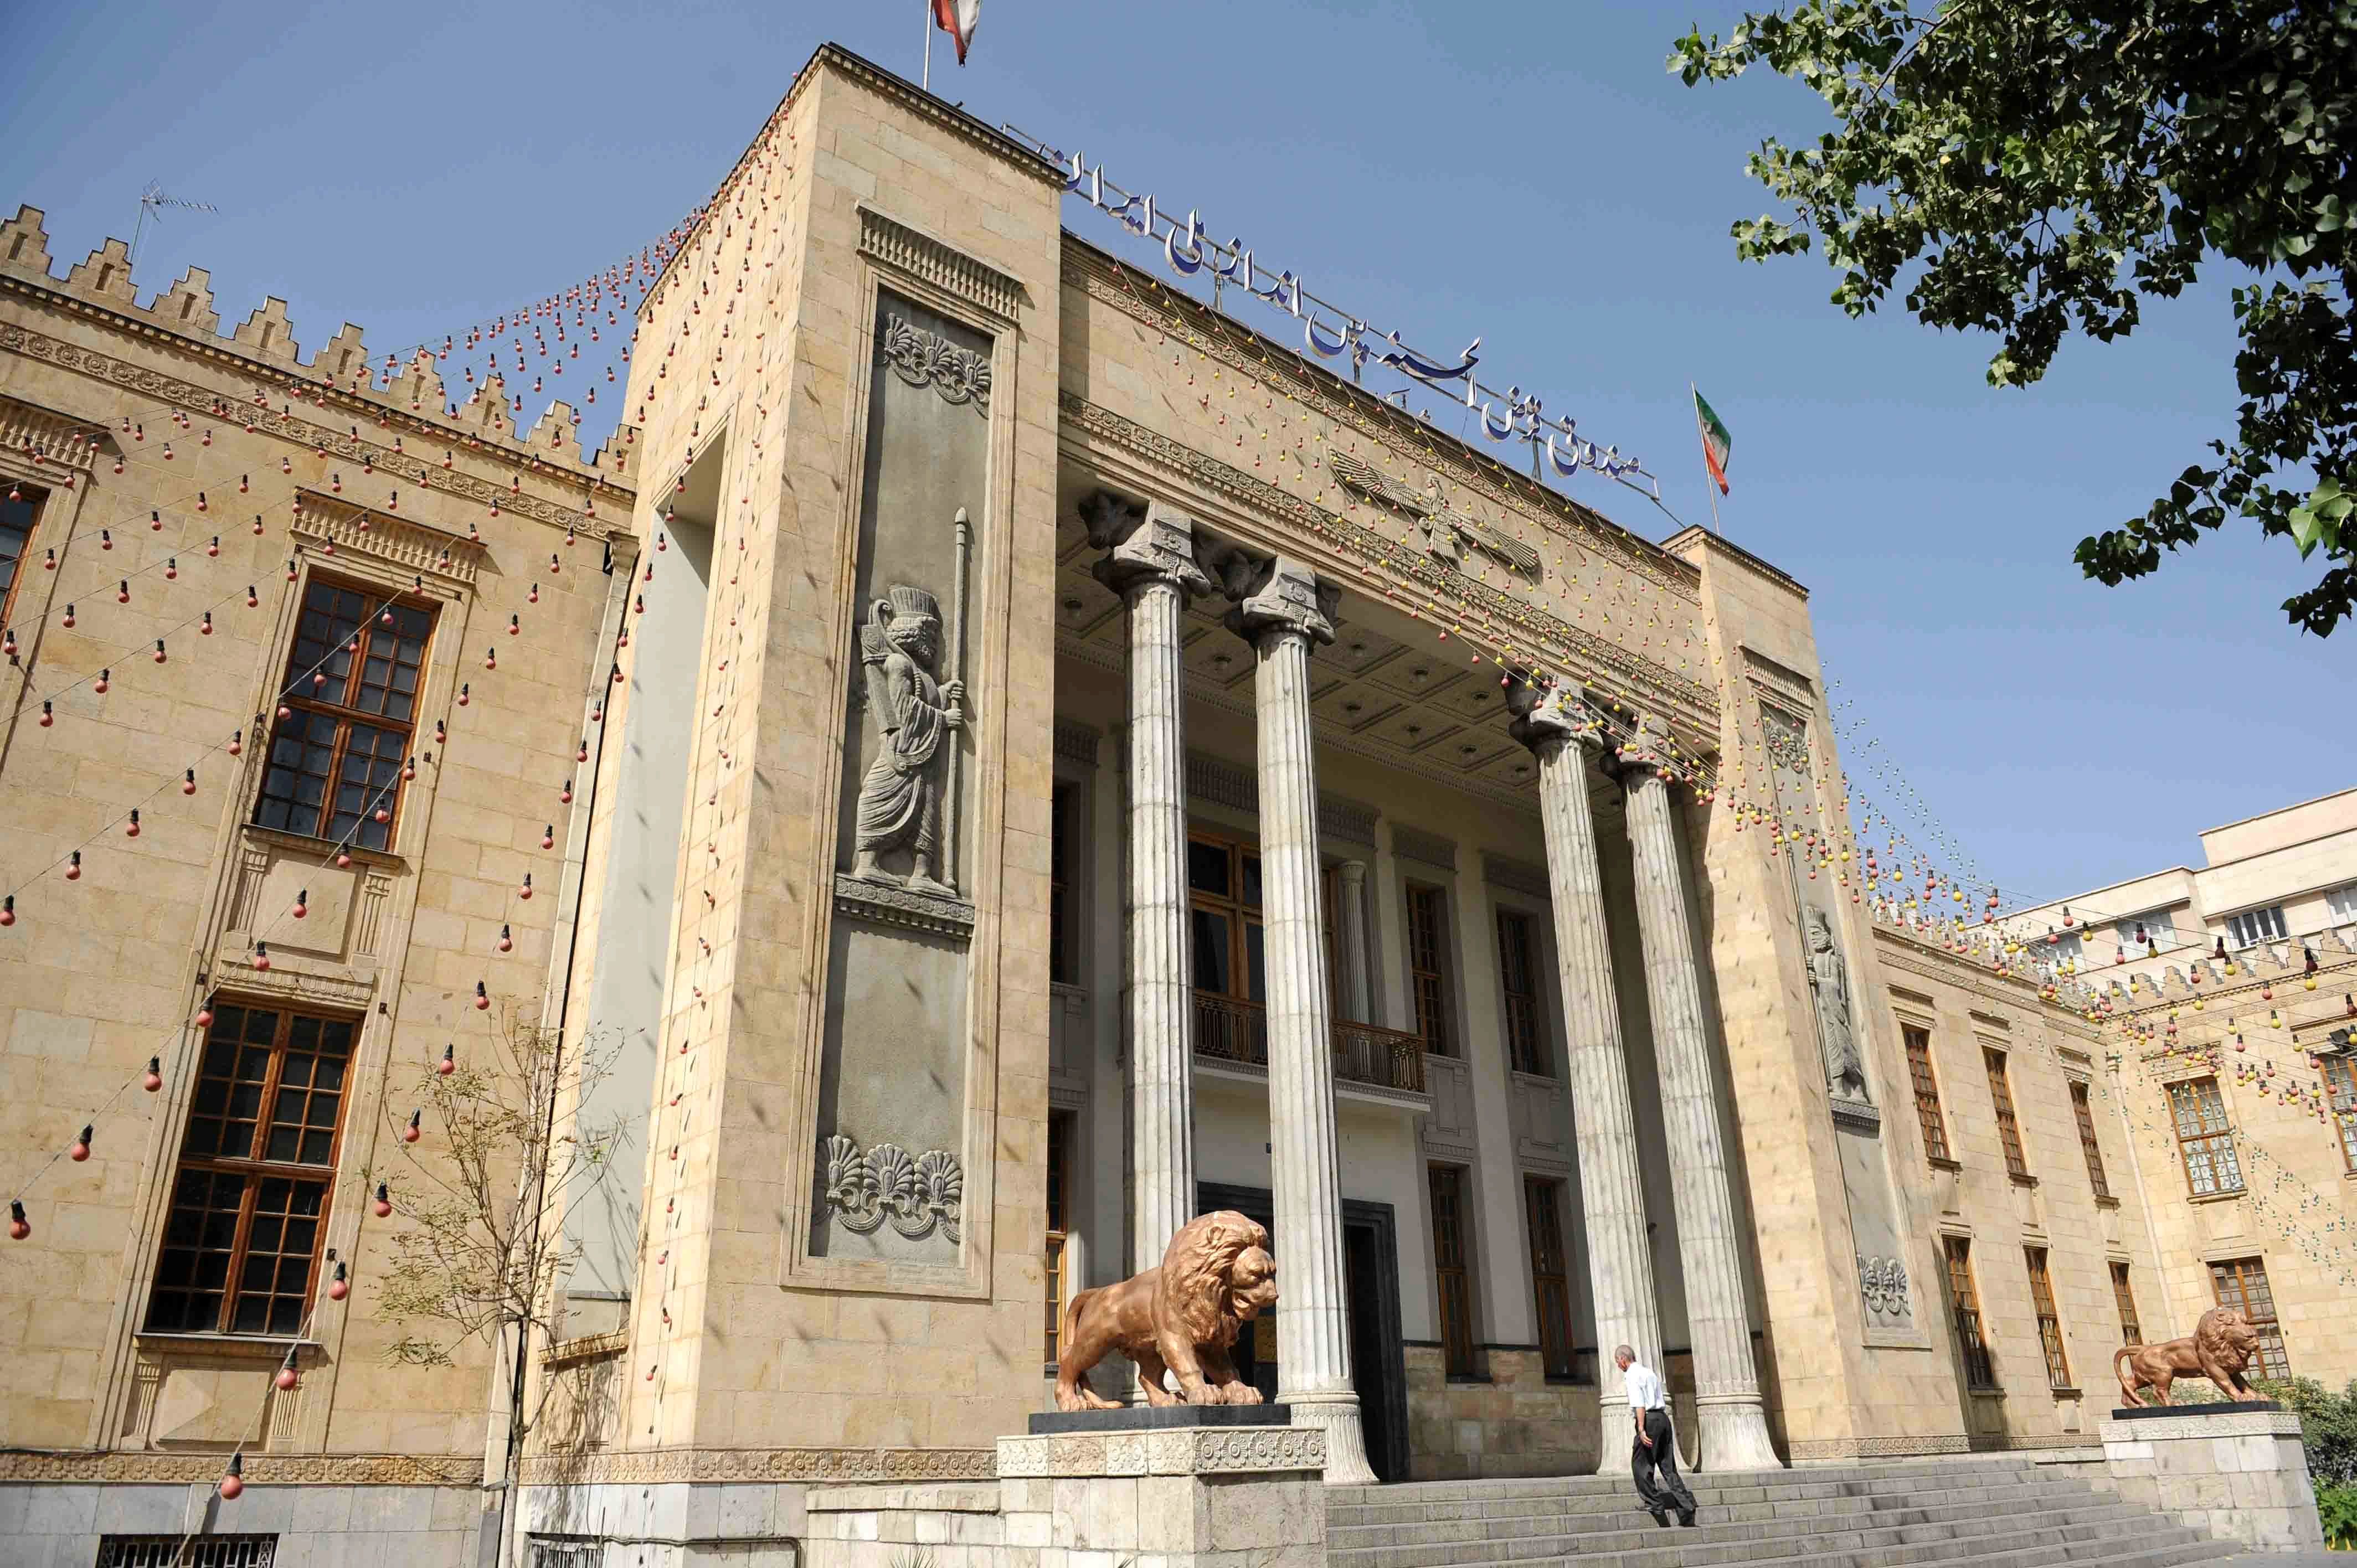 کارت هدیه بانک ملی ایران را جایگزین اسکناس نو کنید